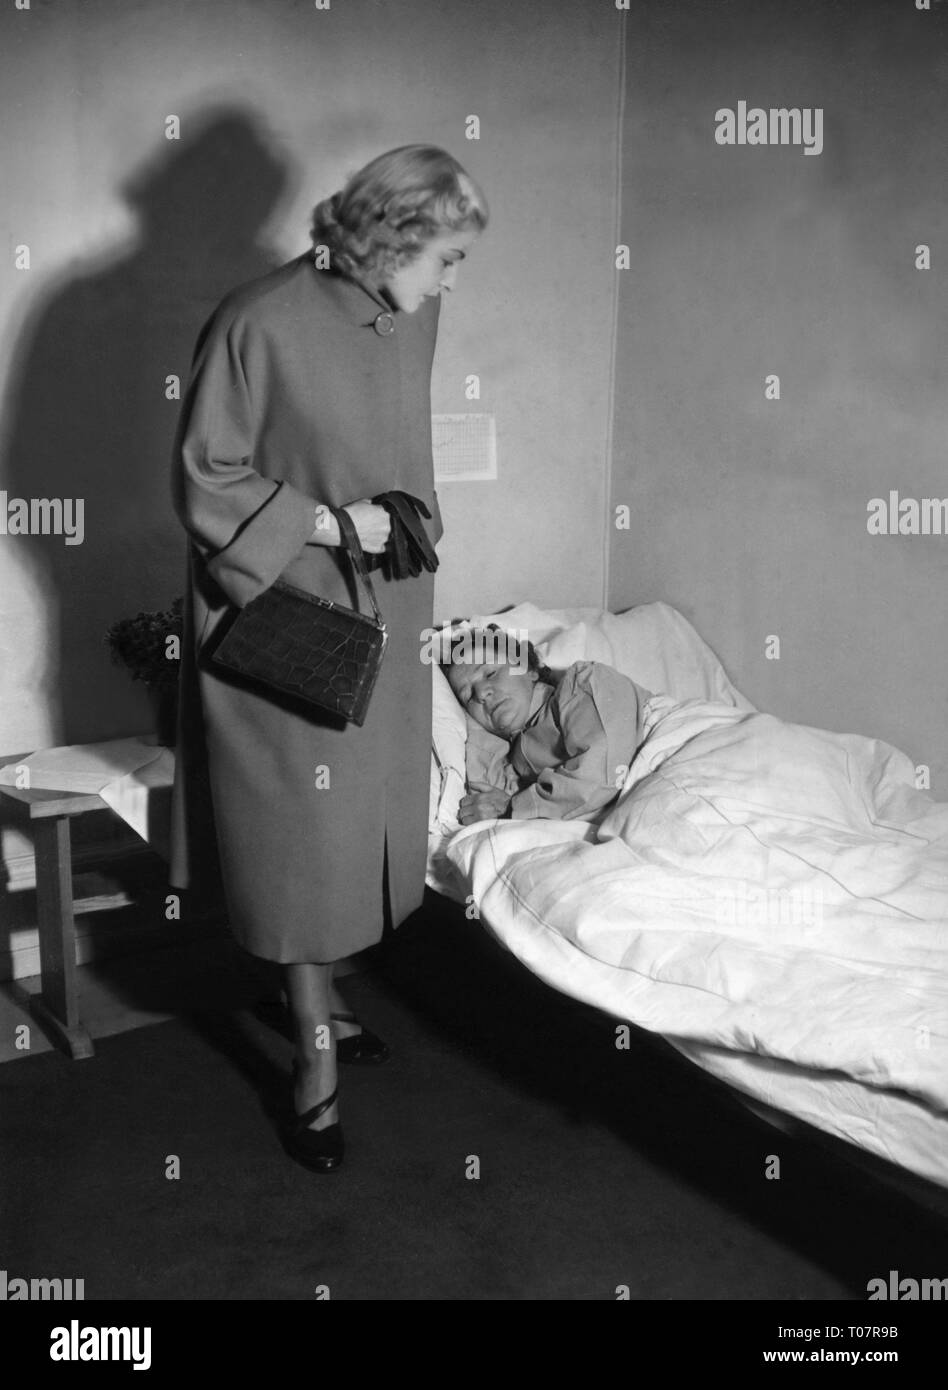 Le persone, la società e le regole della cortesia, visitando un malato, scena degli anni cinquanta, Additional-Rights-Clearance-Info-Not-Available Foto Stock